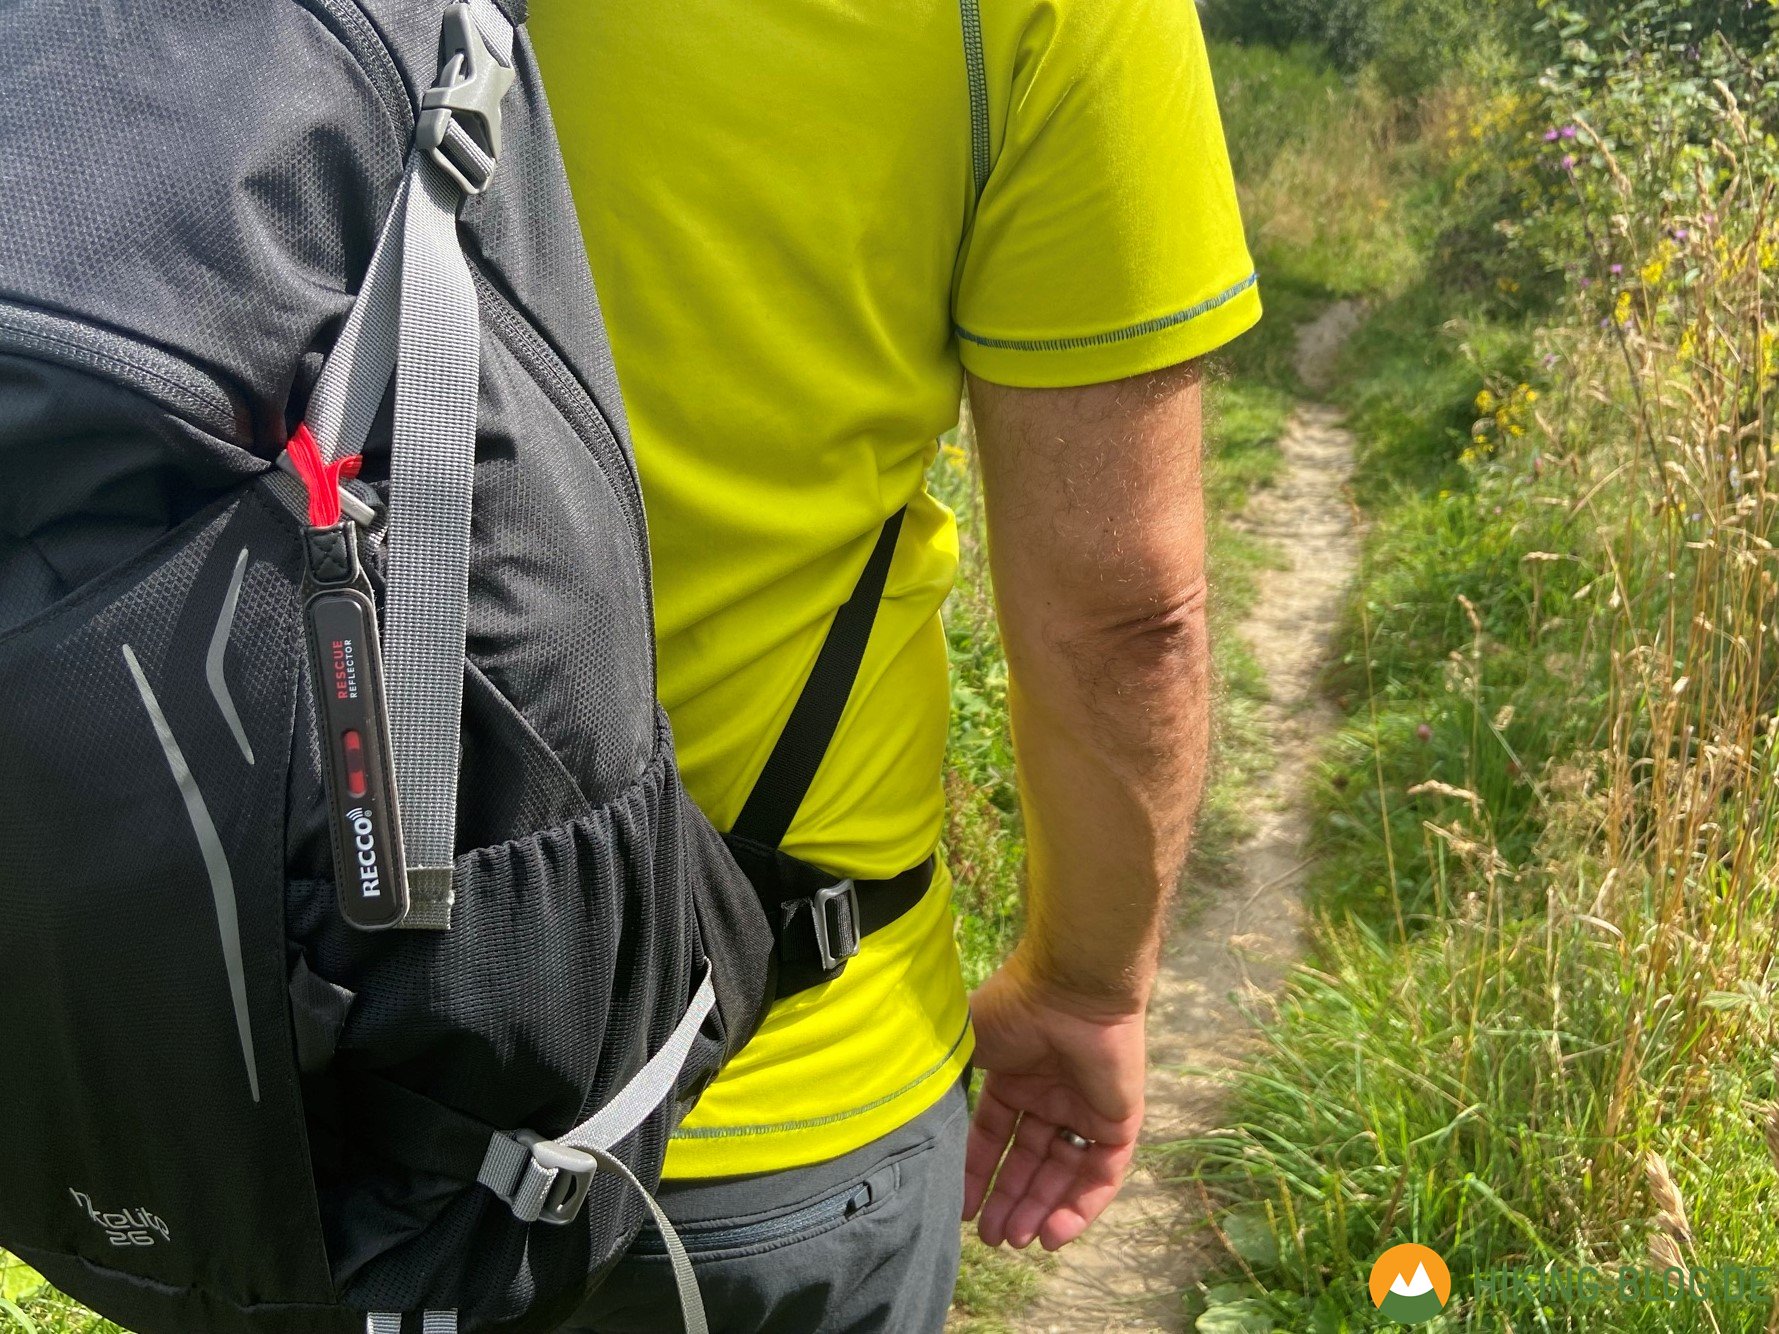 RECCO-Reflektor zum Nachrüsten - Im Notfall leichter gefunden werden -  Hiking Blog